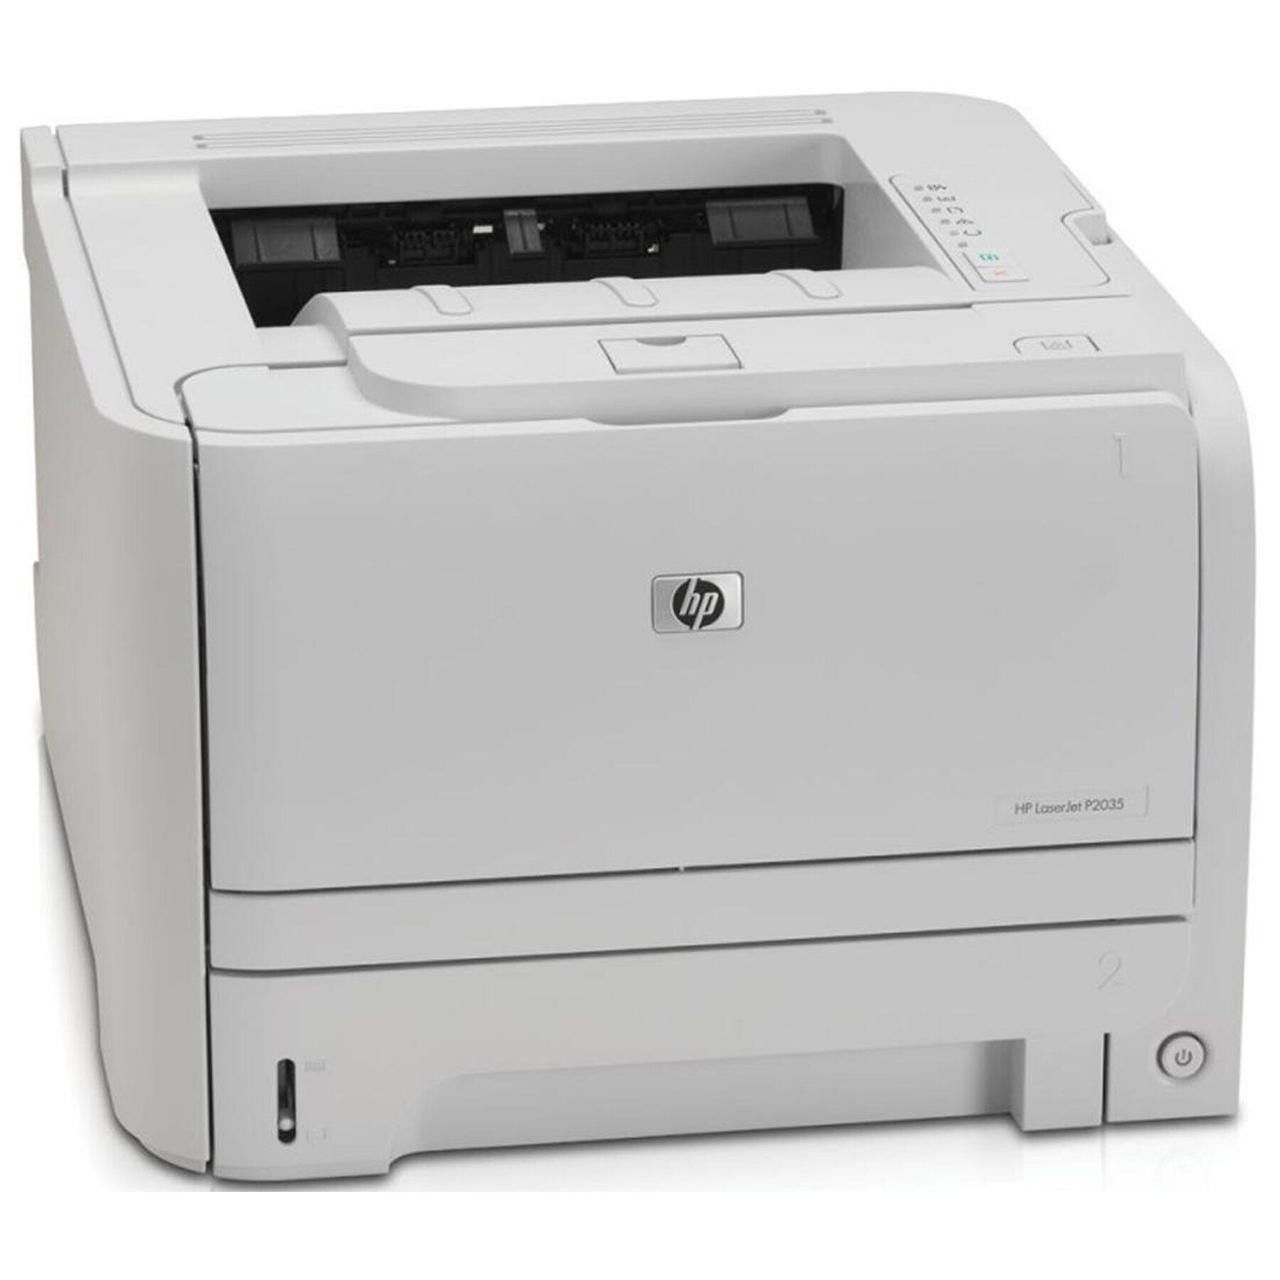 Принтер HP LaserJet P2035 / Лазерний монохромний друк / 600x600 dpi / A4 / 30 стор/хв / USB 2.0 + Кабелі (USB та живлення) в